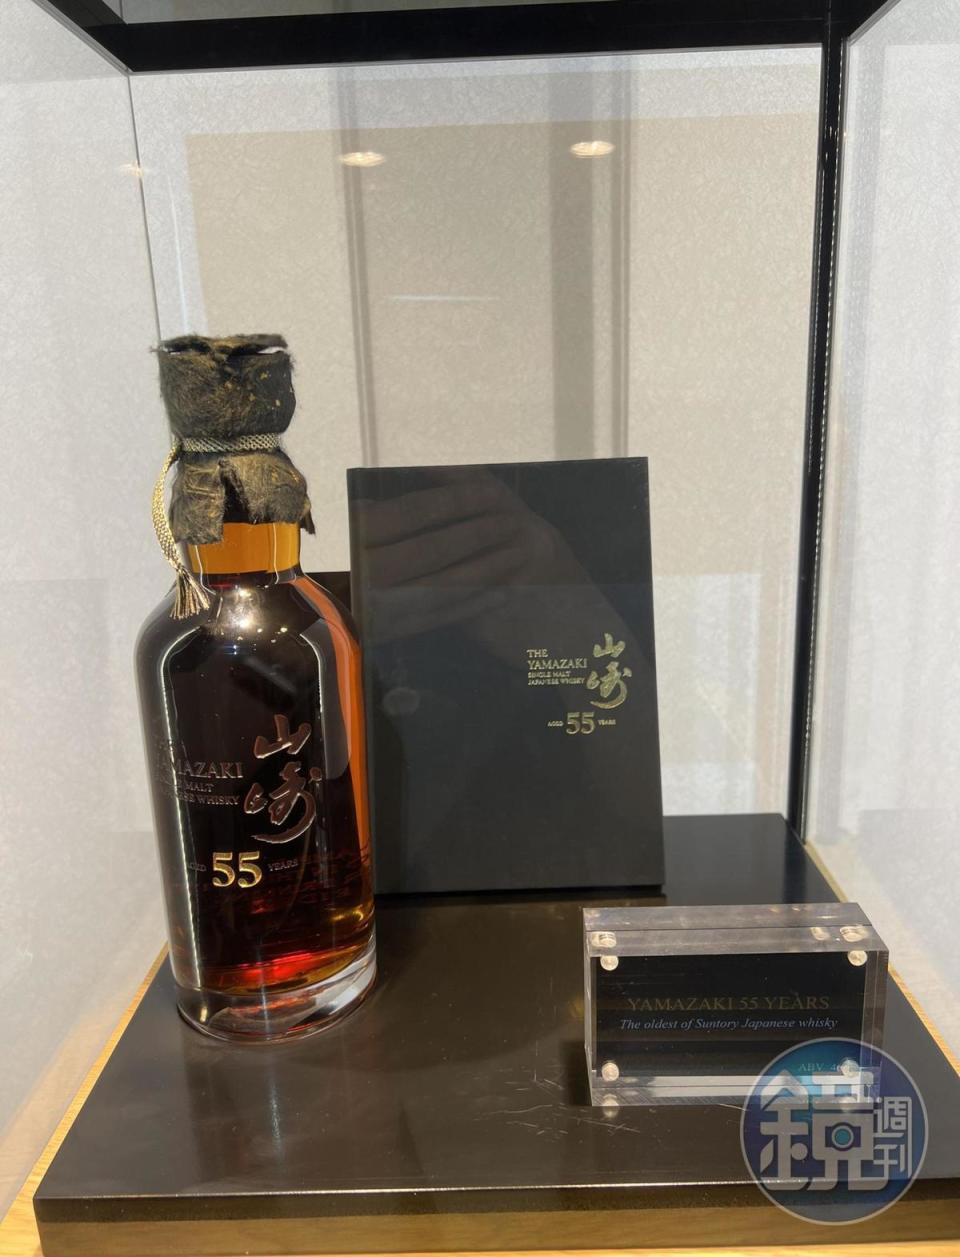 2020年在拍賣會上創下美金80萬元天價的最高年份日本威士忌「山崎55年單一麥芽威士忌」。